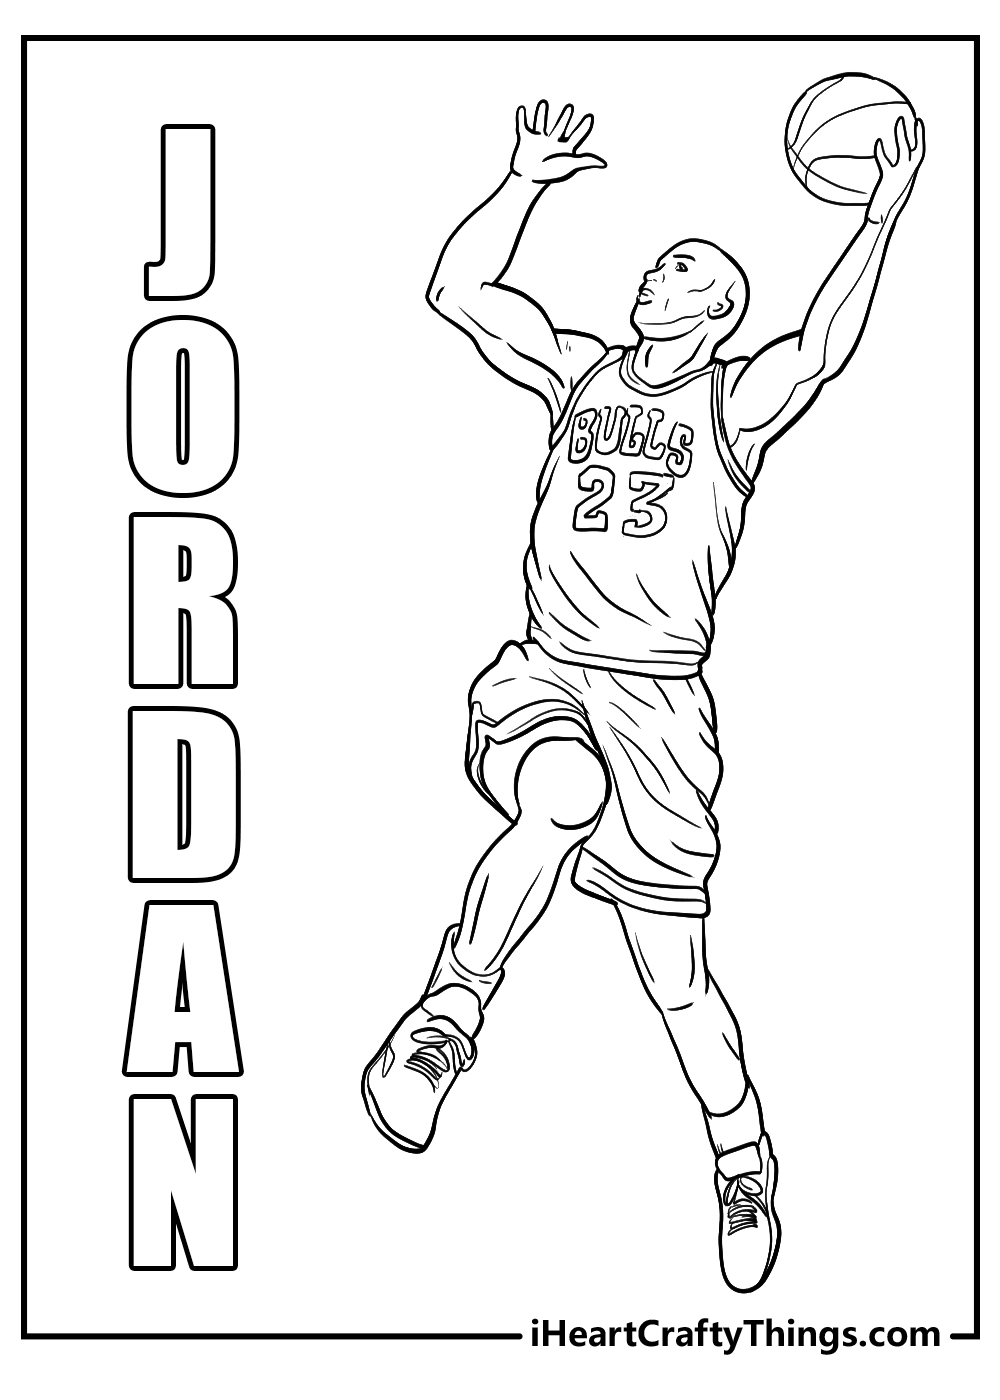 Jordan coloring book free download